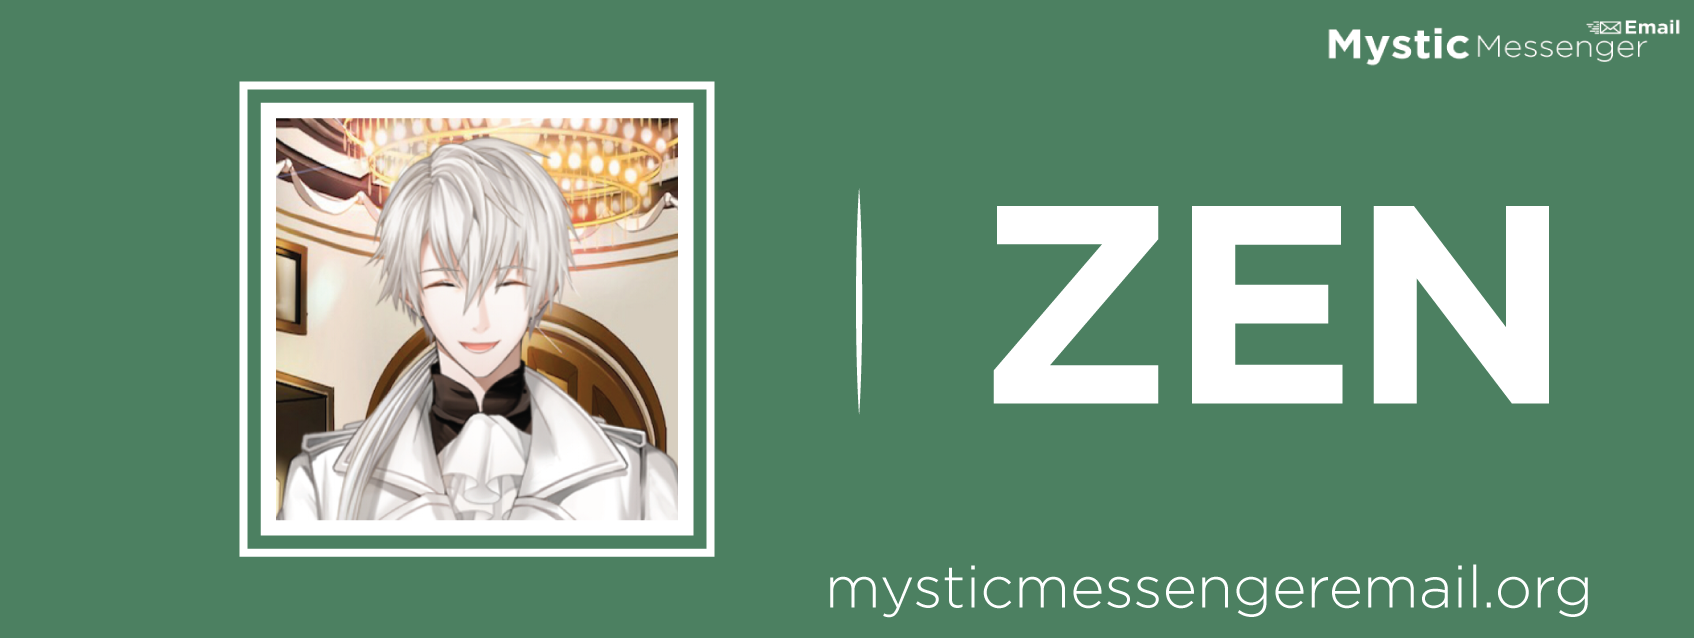 zen-mystic-messenger